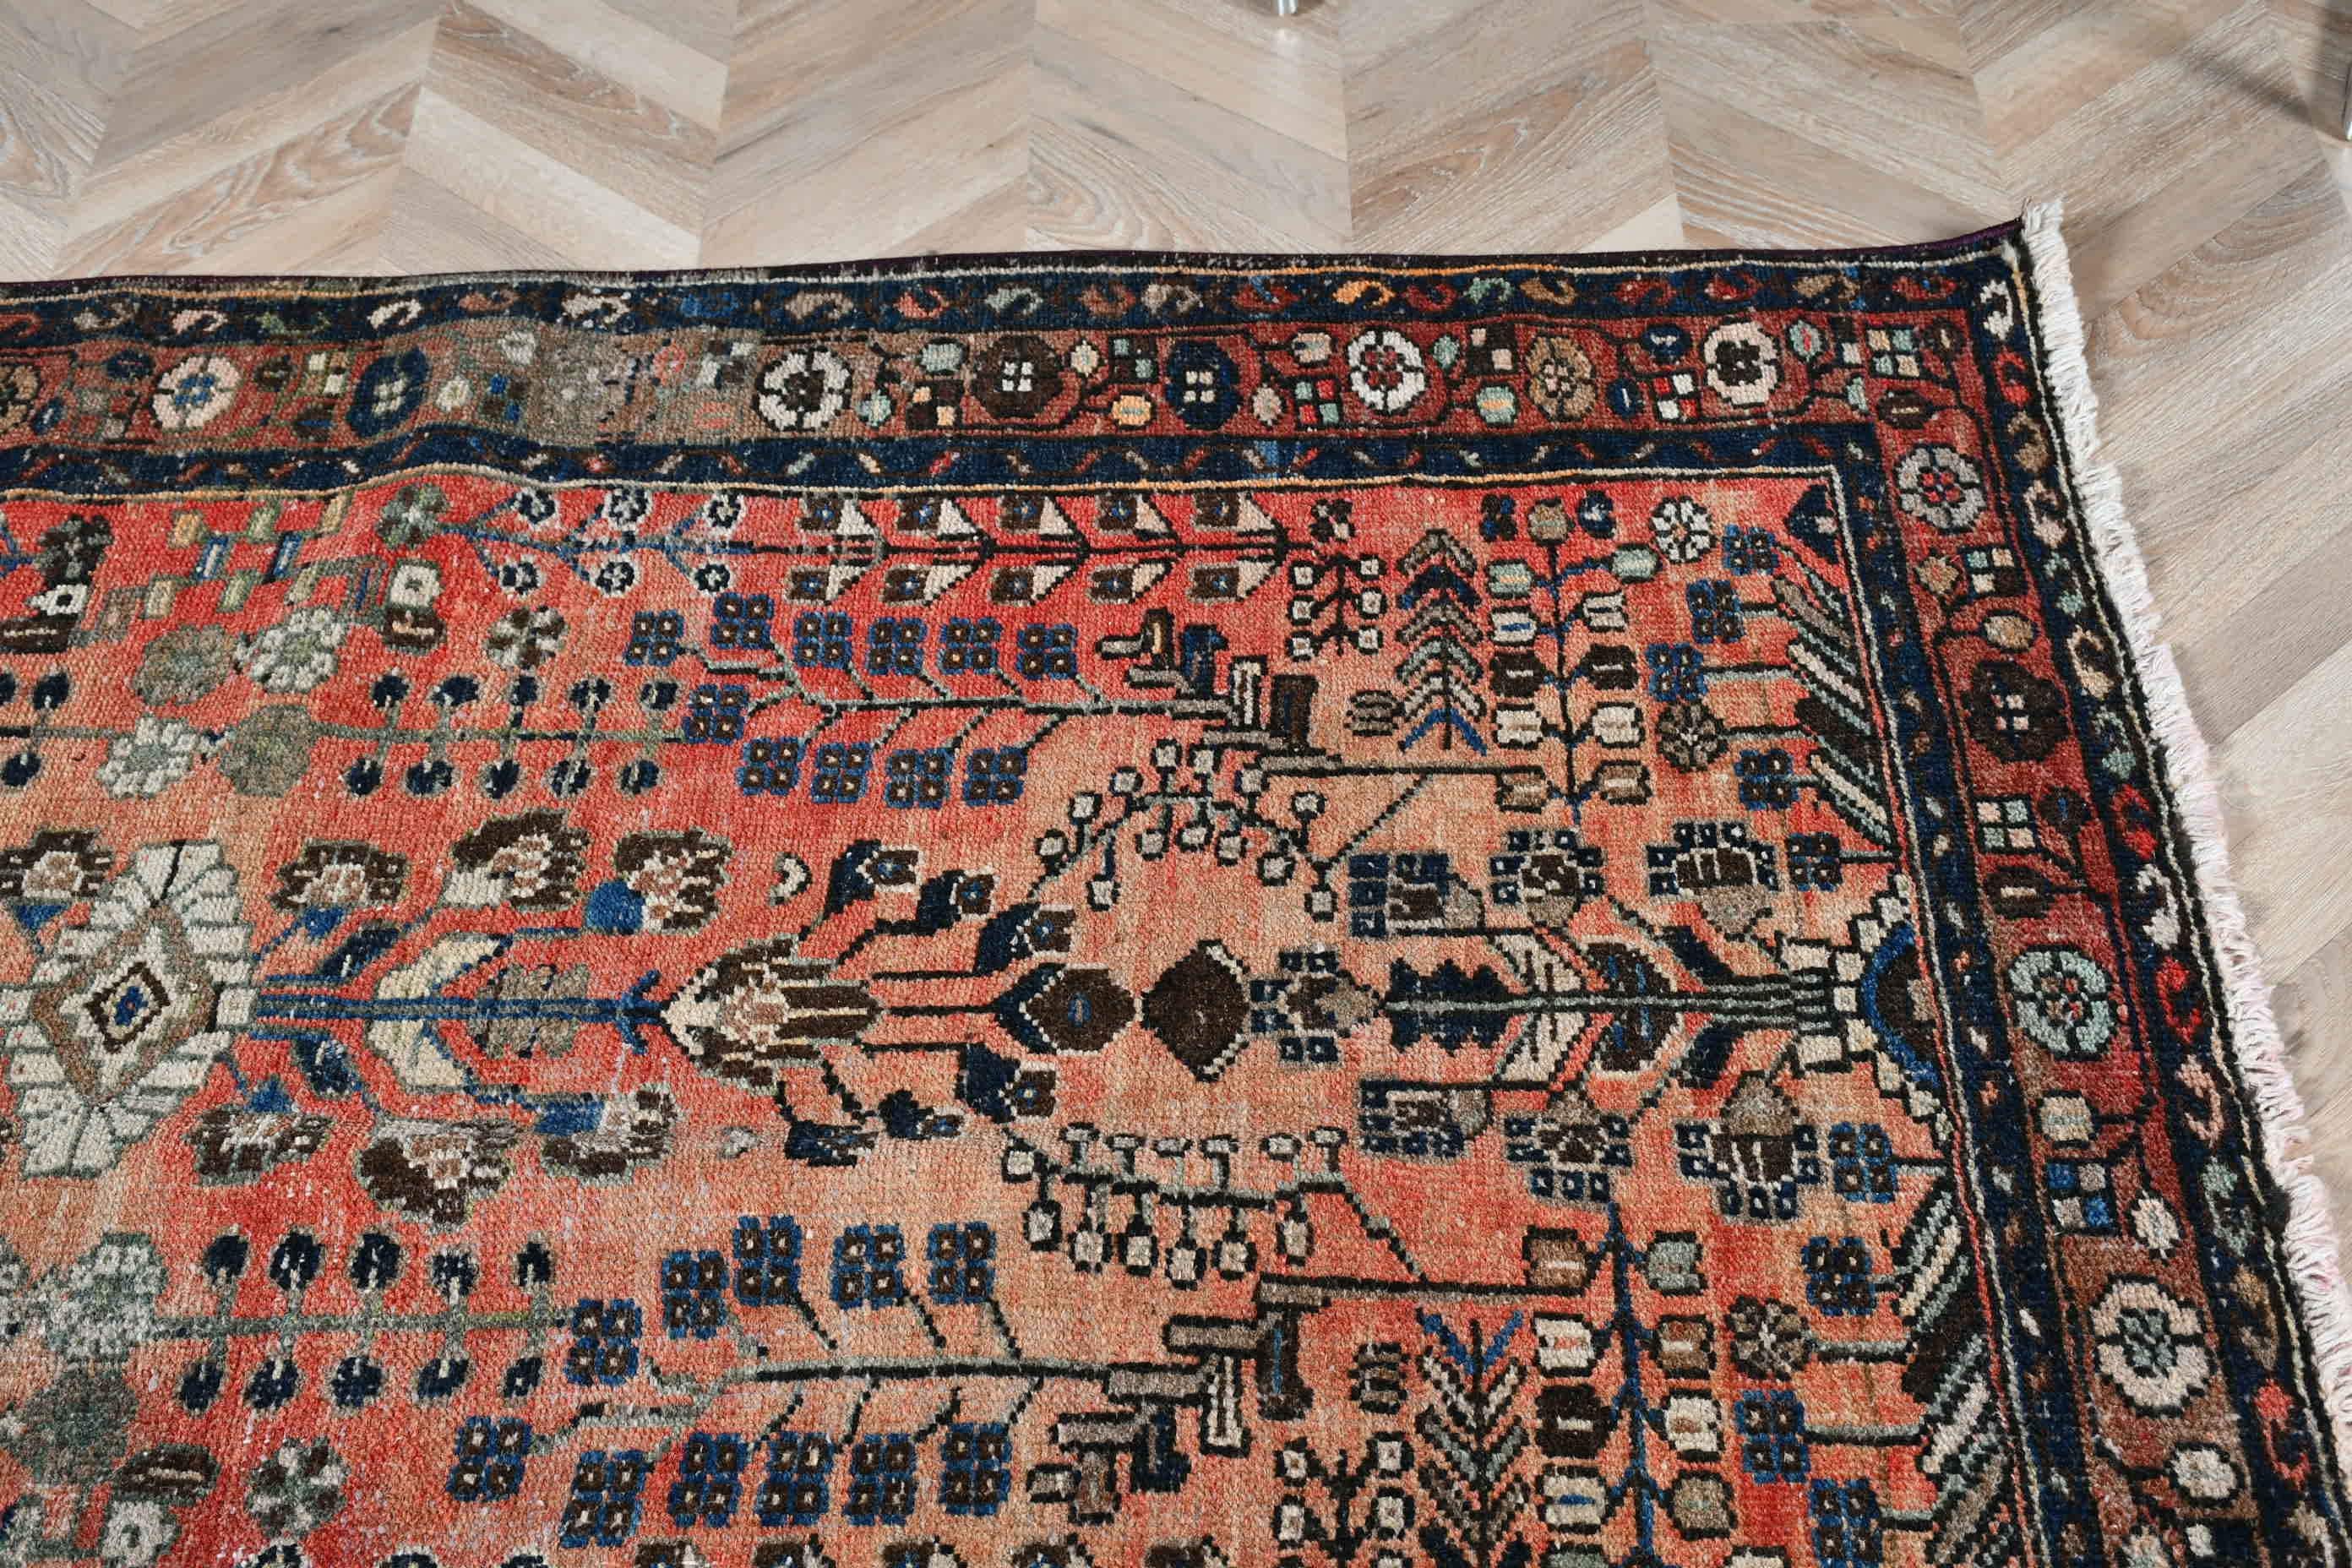 Turkish Rug, Living Room Rug, Wool Rugs, Rugs for Bedroom, Vintage Rugs, 4x6.5 ft Area Rug, Art Rugs, Orange Wool Rugs